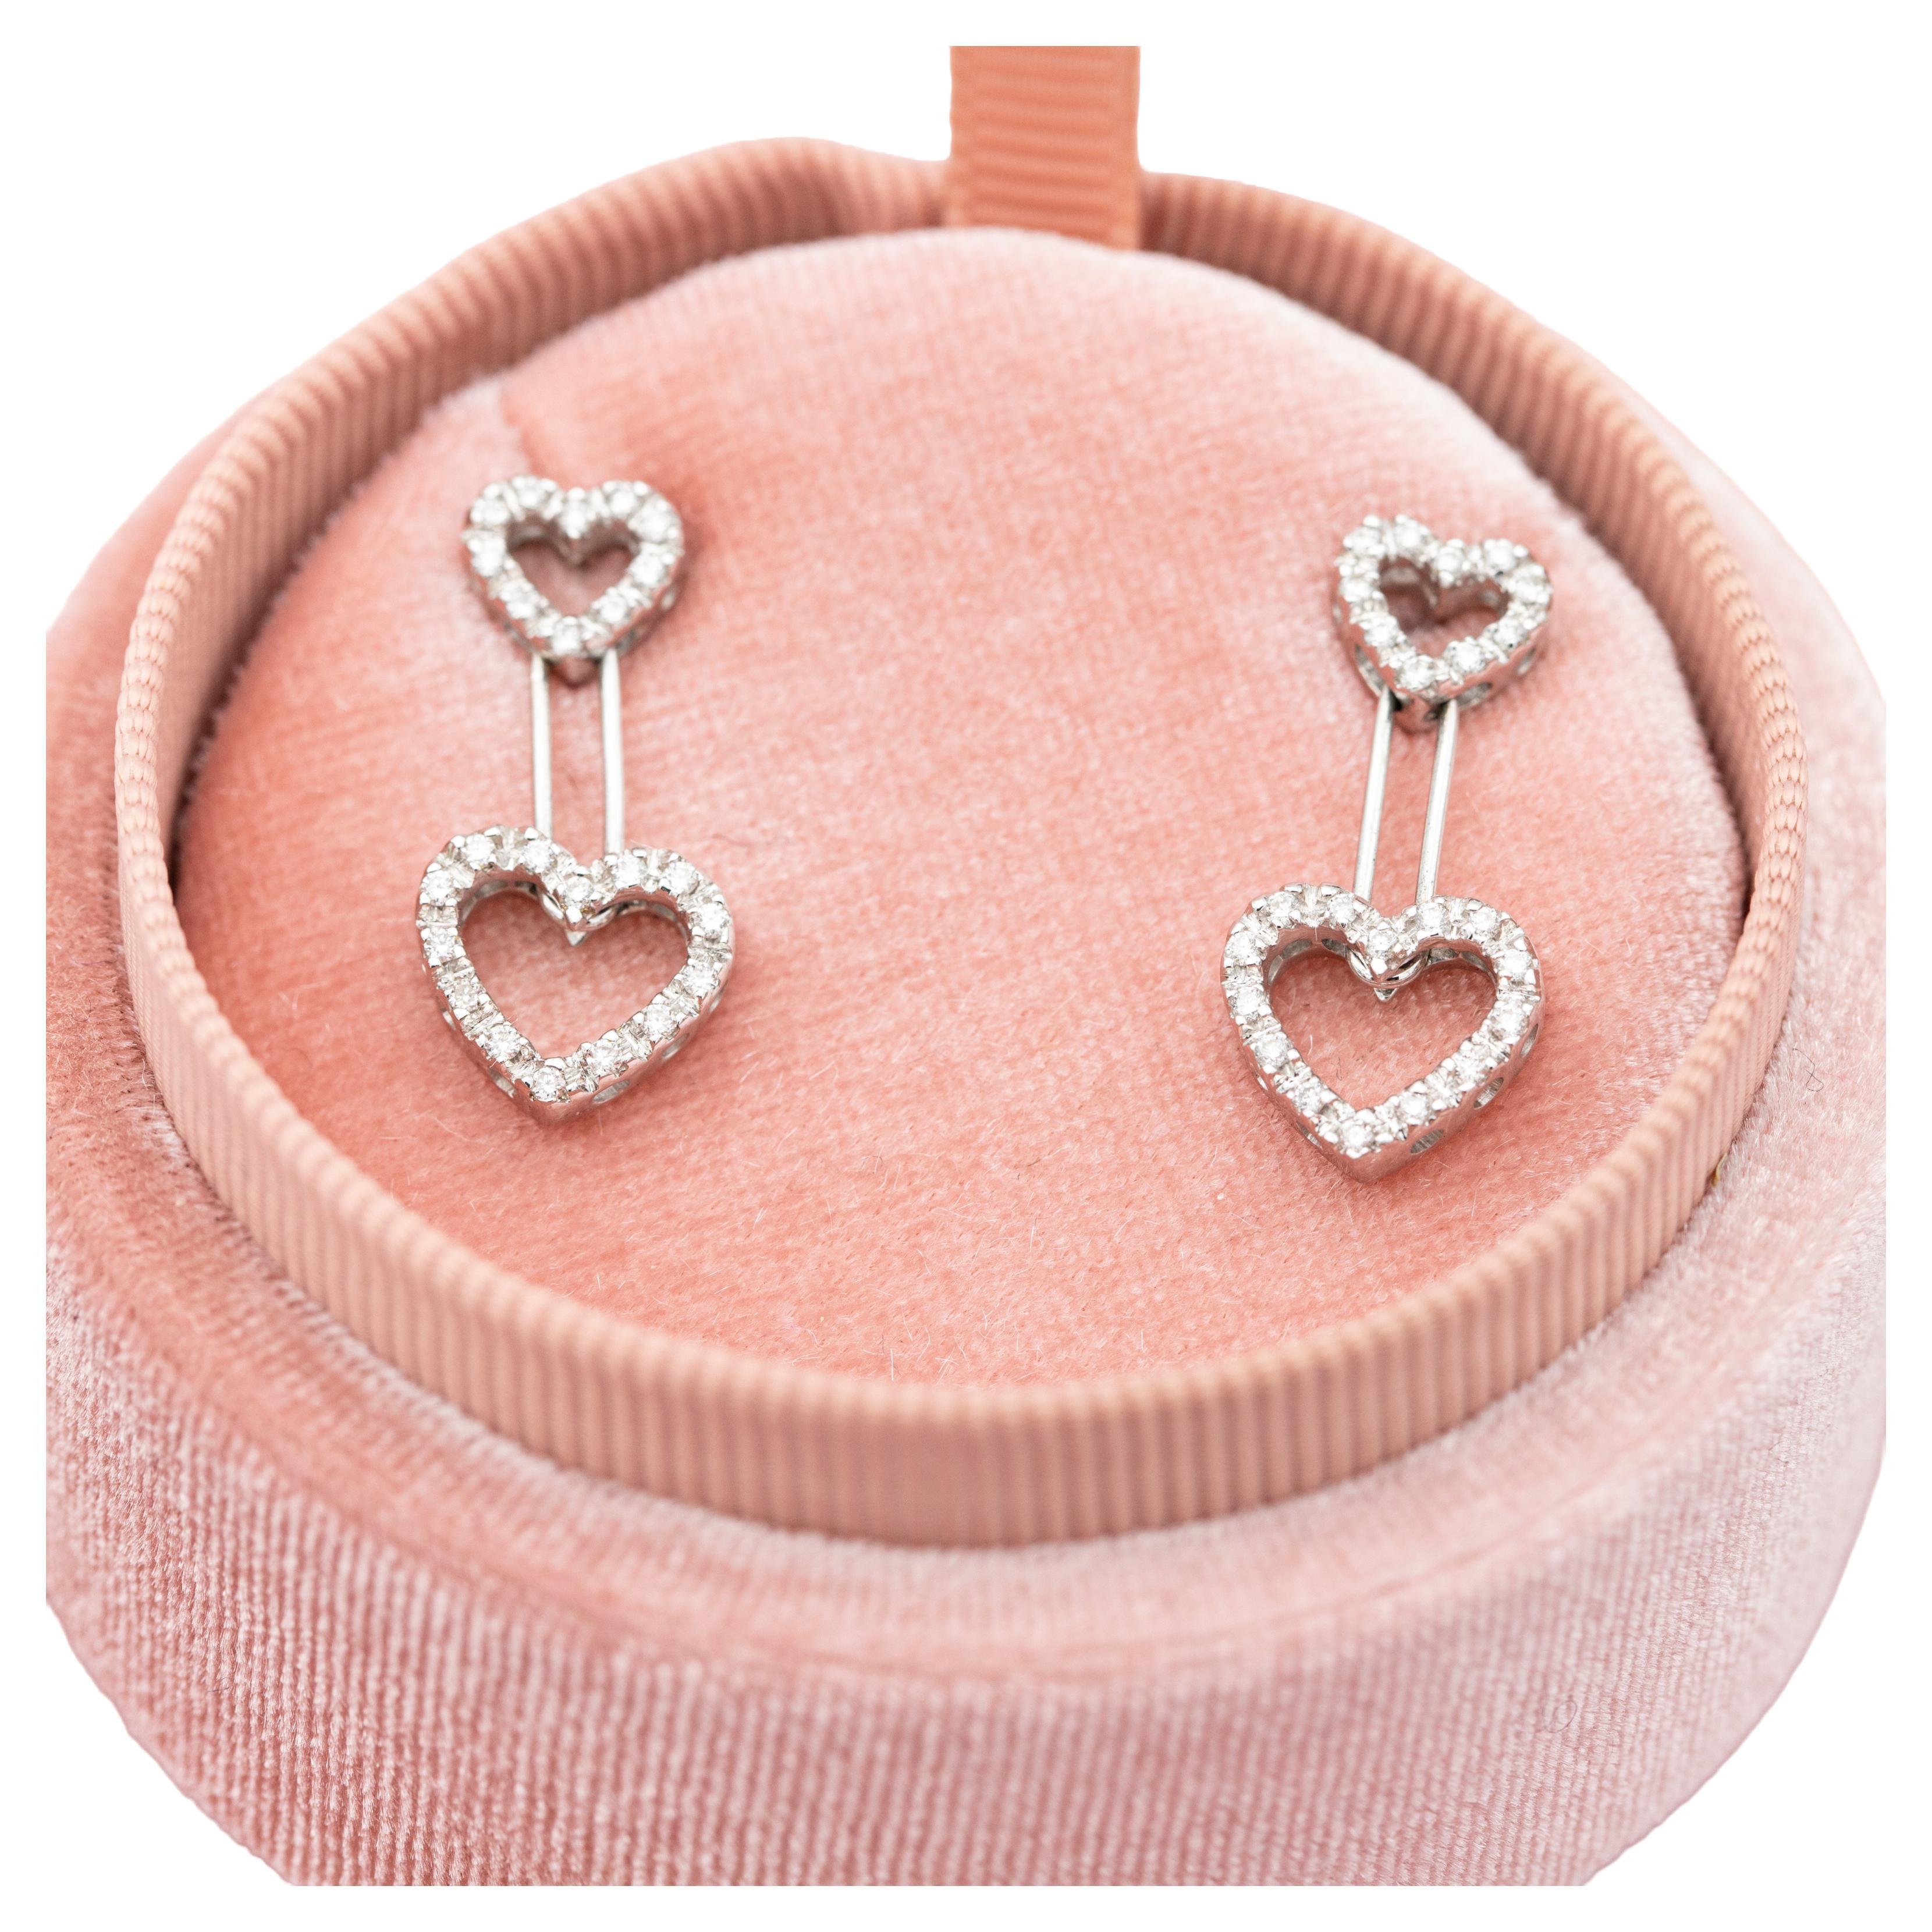 18K white gold heart earrings - estate swinging diamond studs - Romantic gift 